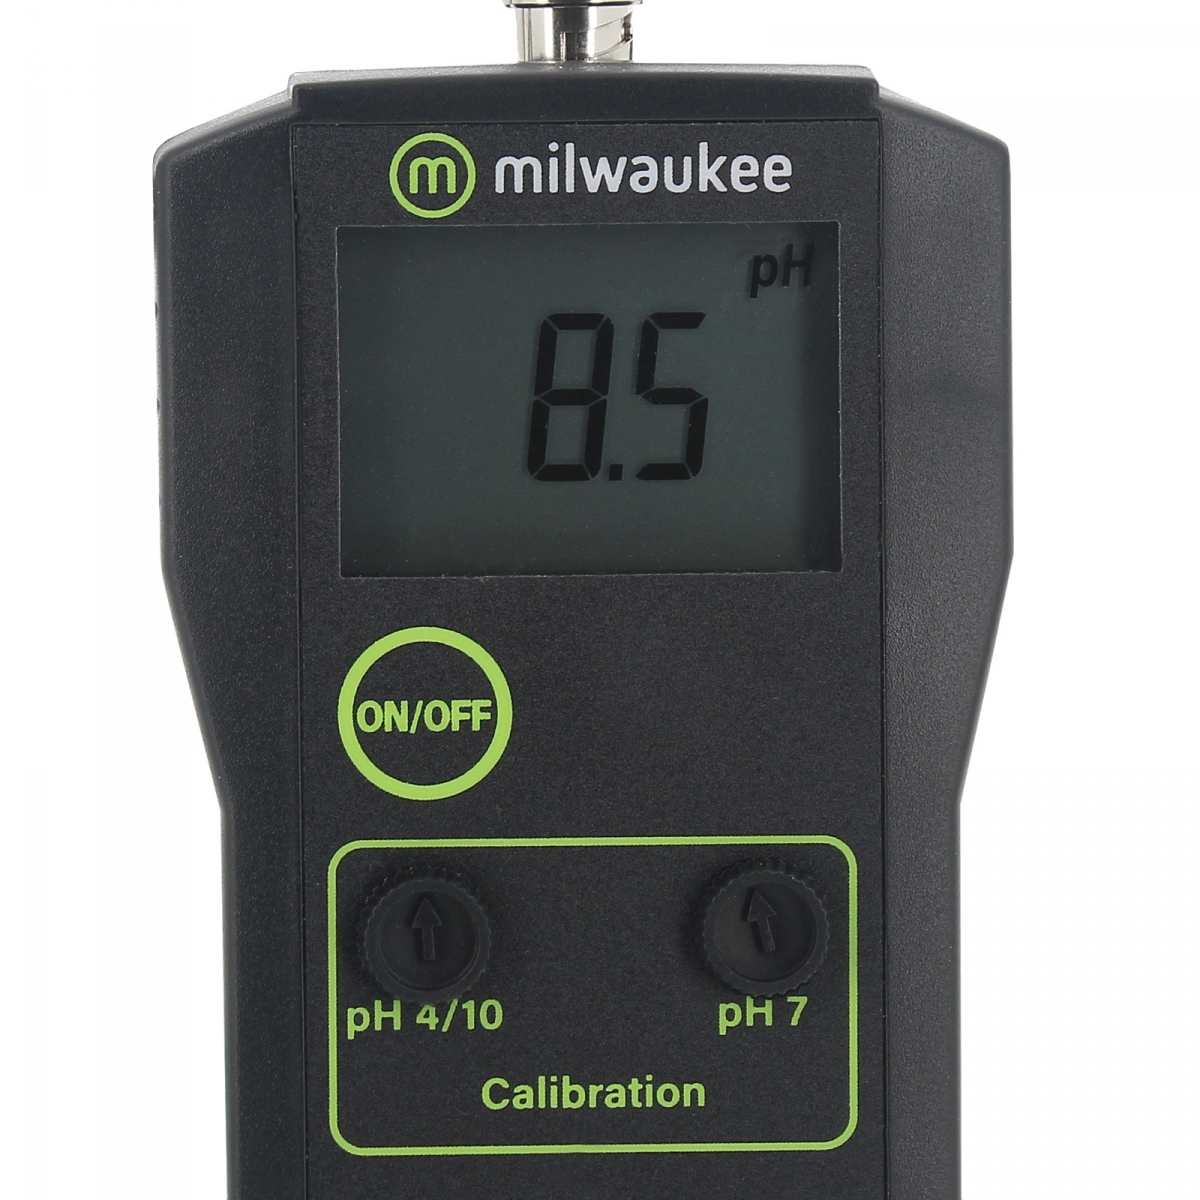 Milwaukee MW101 PRO pH Meter